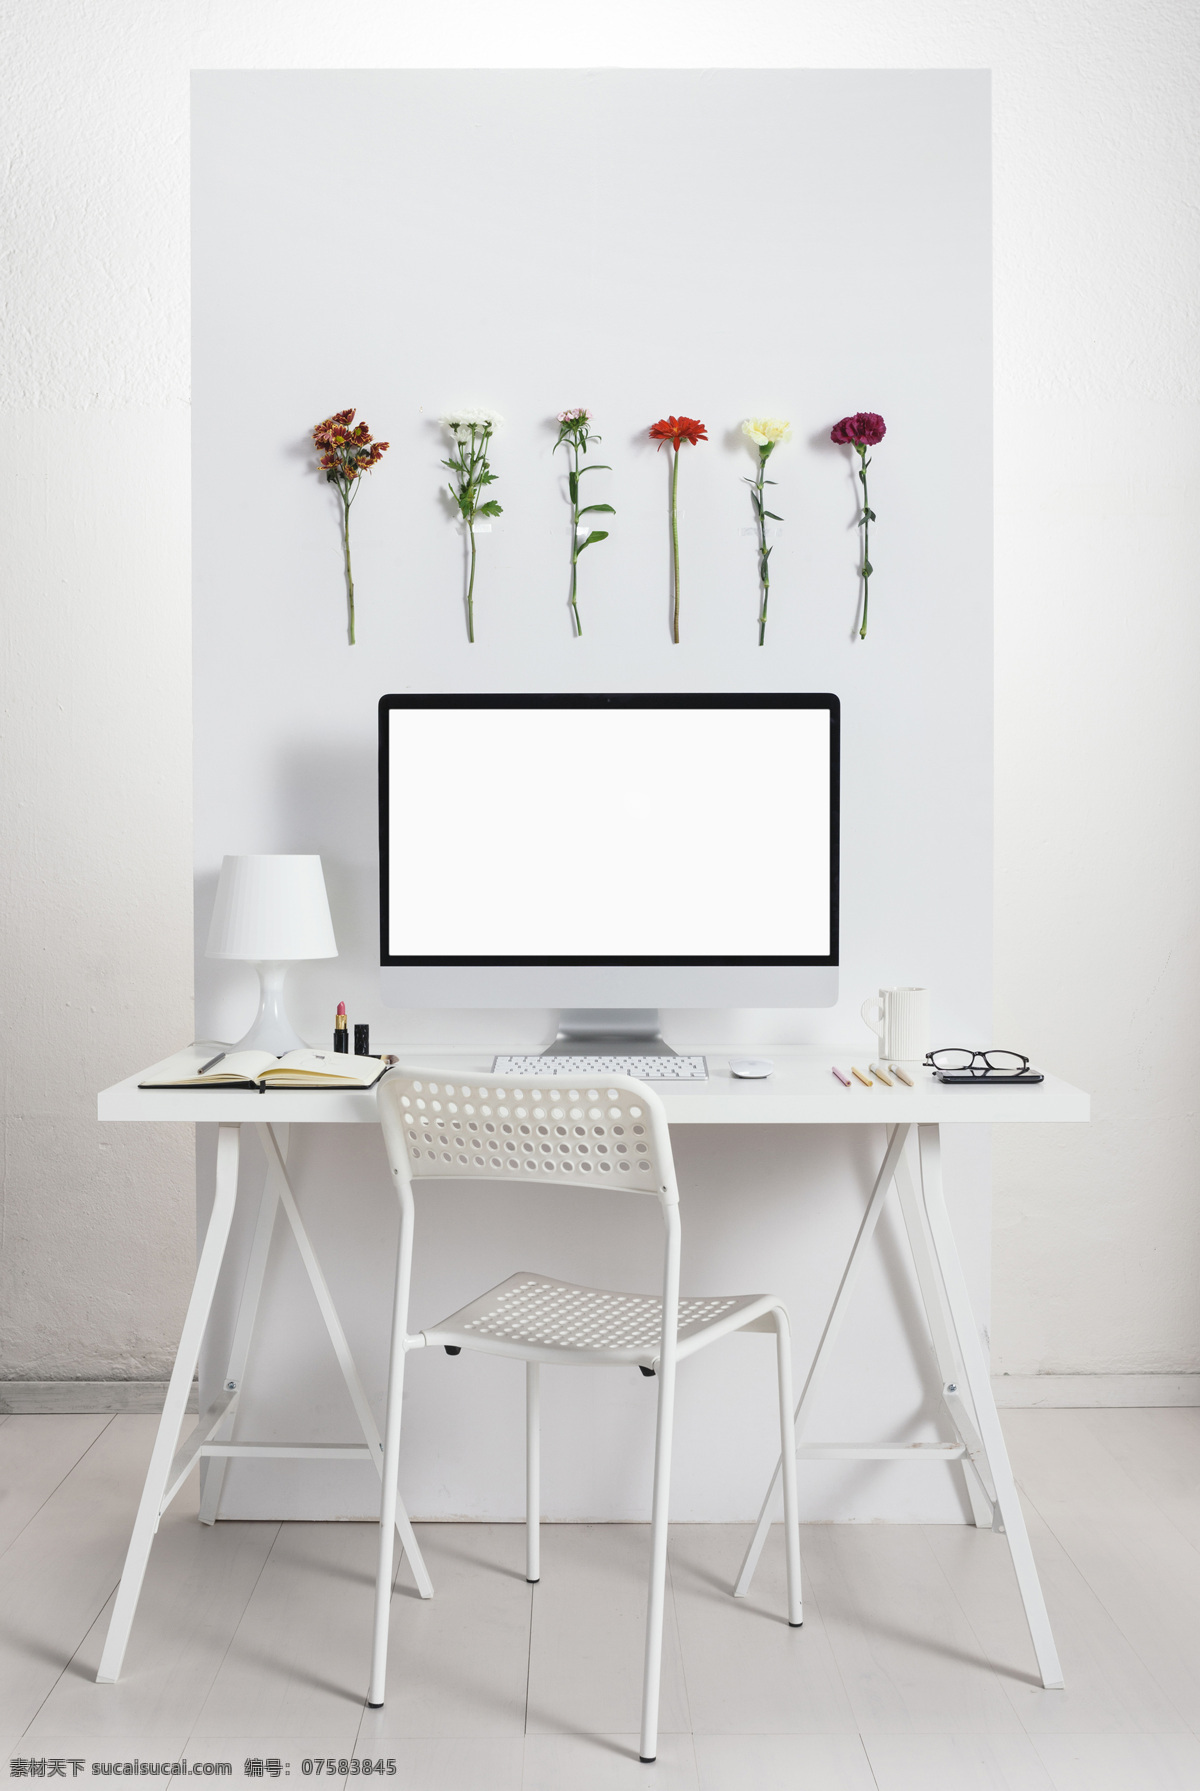 创意 办公 书桌 装饰 花朵 鲜花 装饰画 办公室 苹果电脑 椅子 办公桌 花卉 其他类别 生活百科 白色